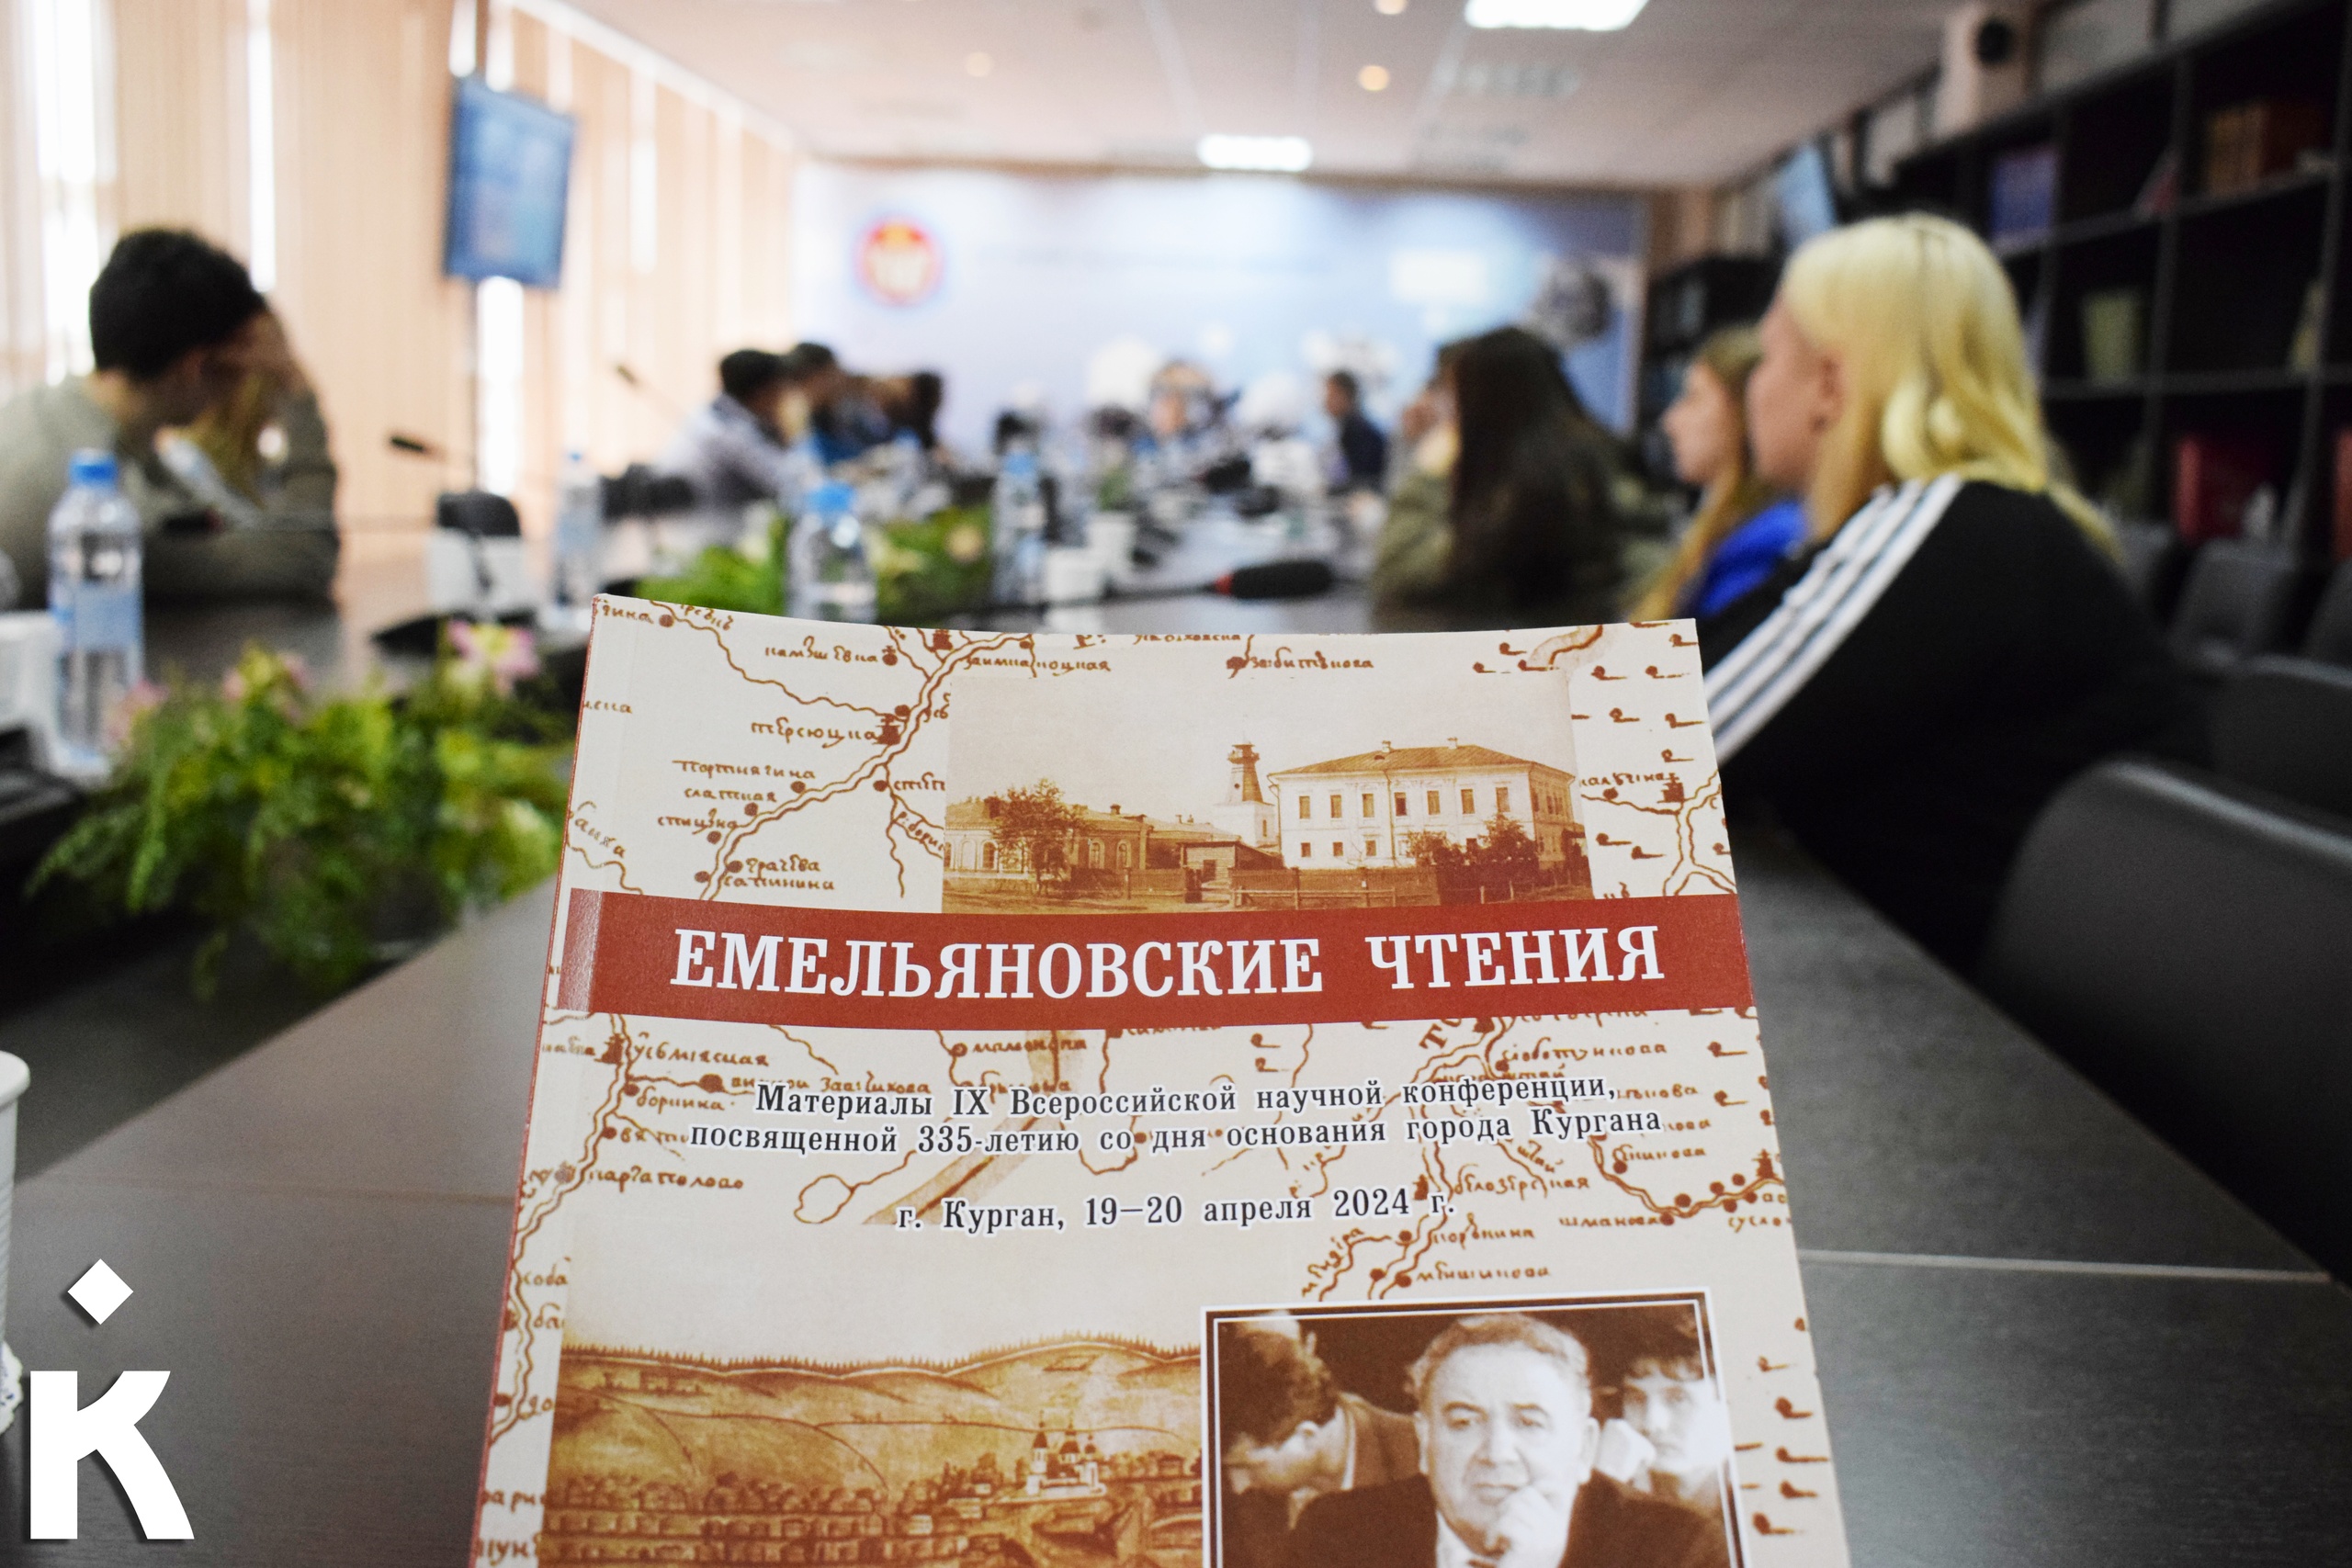 В КГУ возродили «Емельяновские чтения», чтобы обсудить вопросы изучения региональной истории